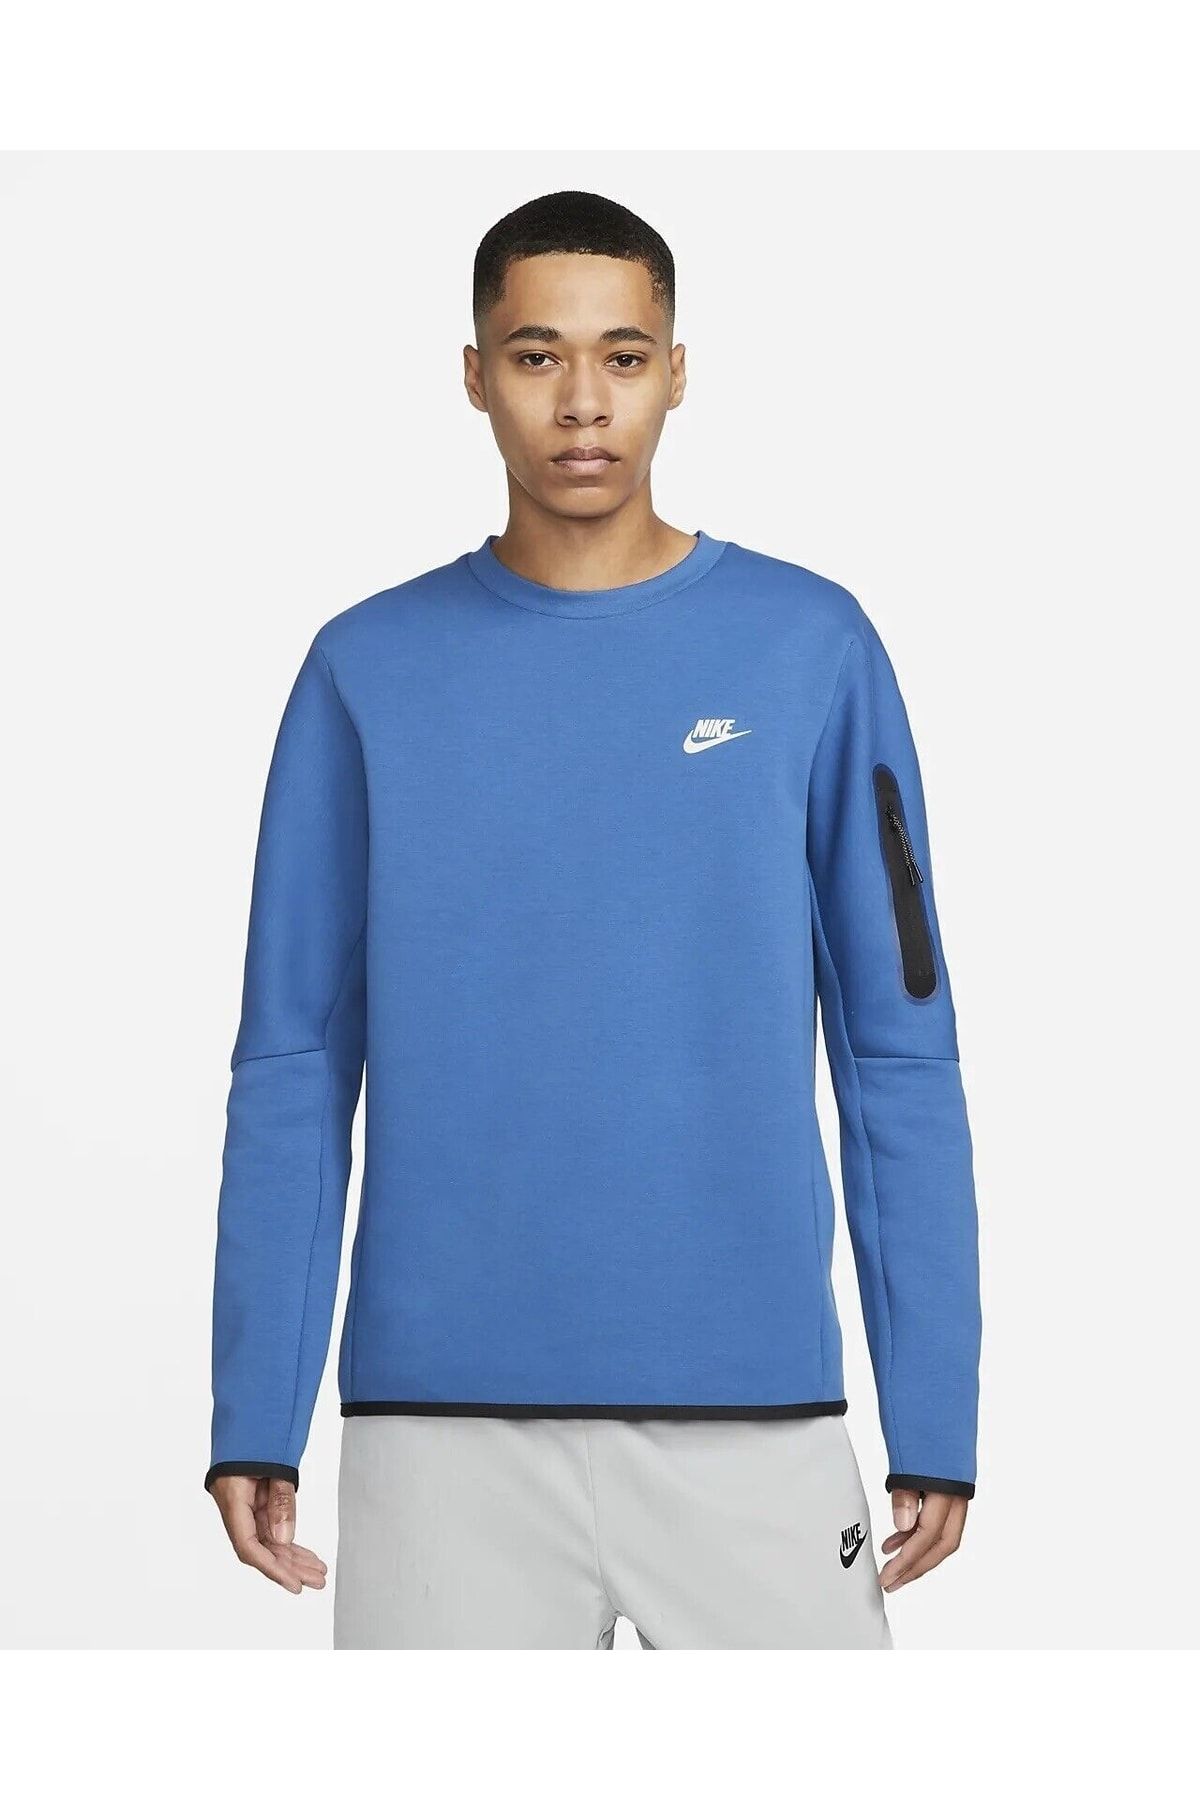 Nike Tech Fleece Crew Sweater Sweatshirt Blue Cu4505-407